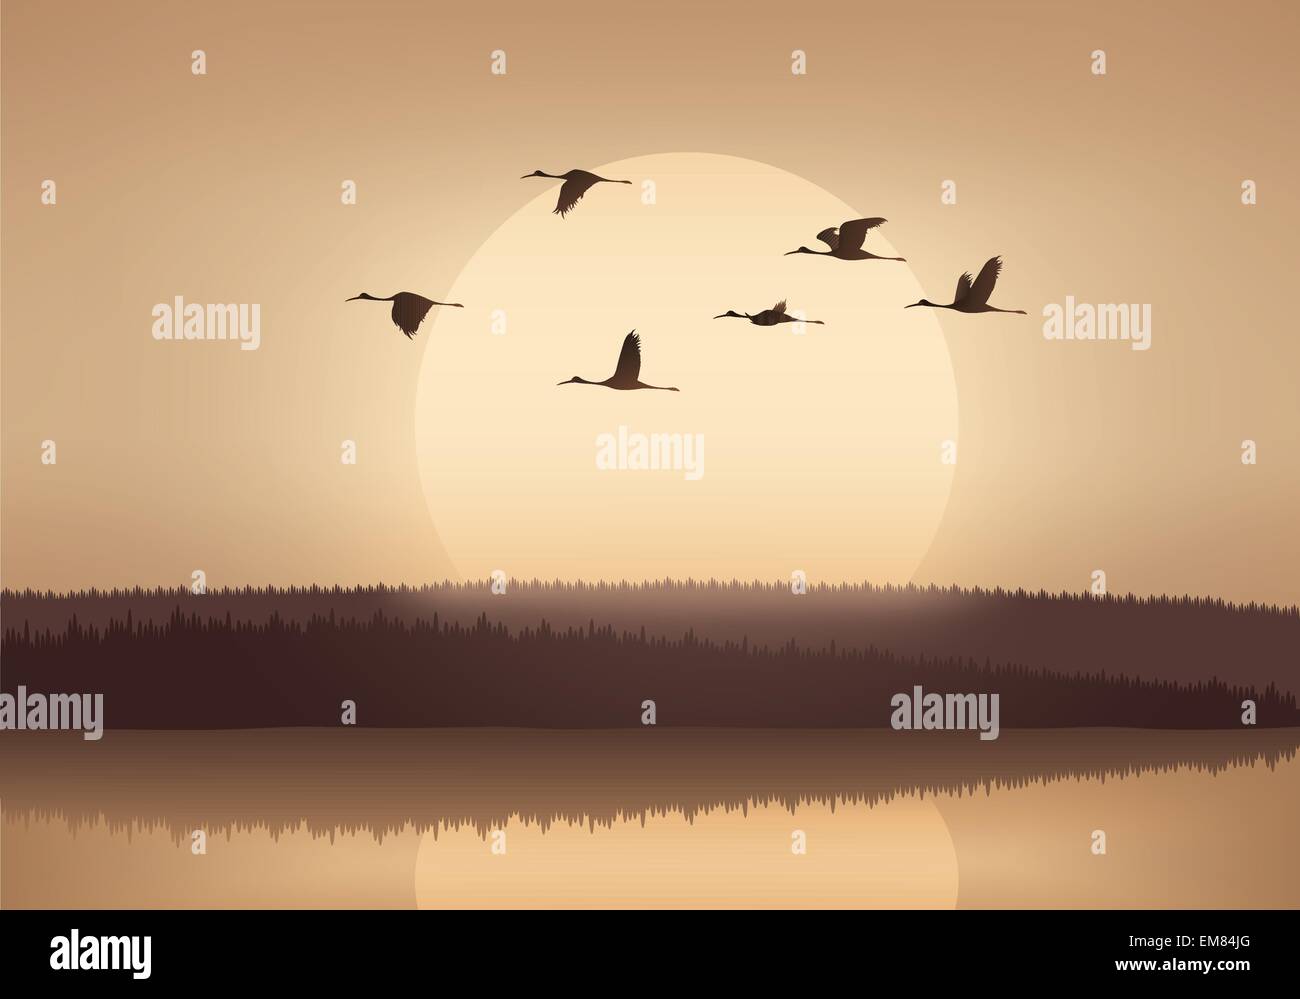 Vol de grues au coucher du soleil Illustration de Vecteur